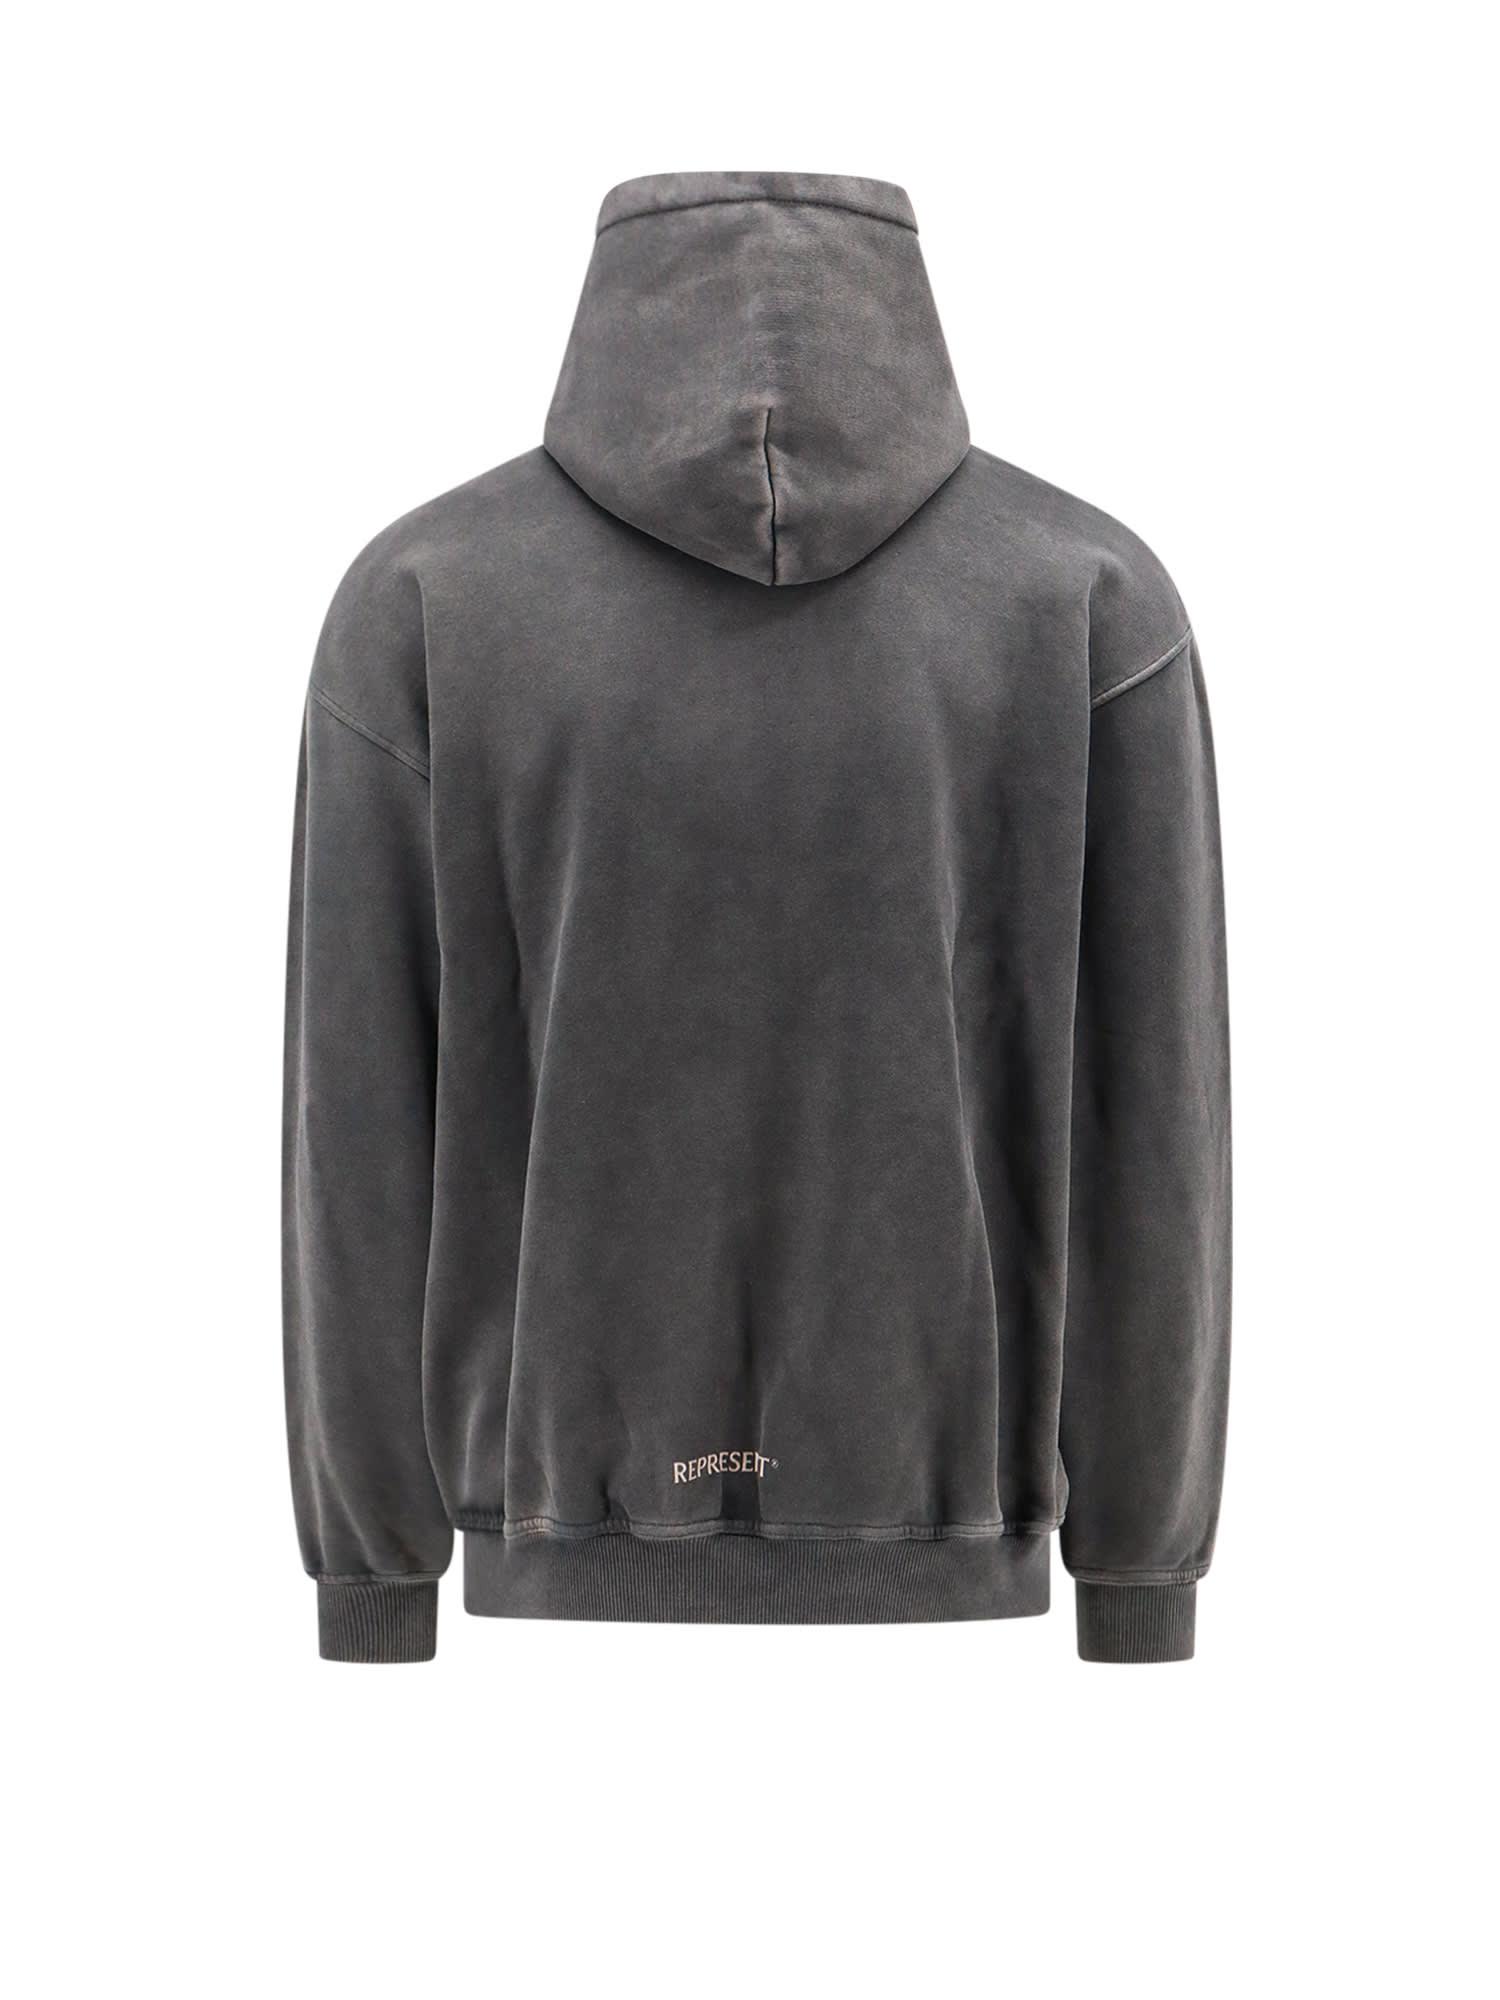 Shop Represent Sweatshirt Fleece In Aged Black